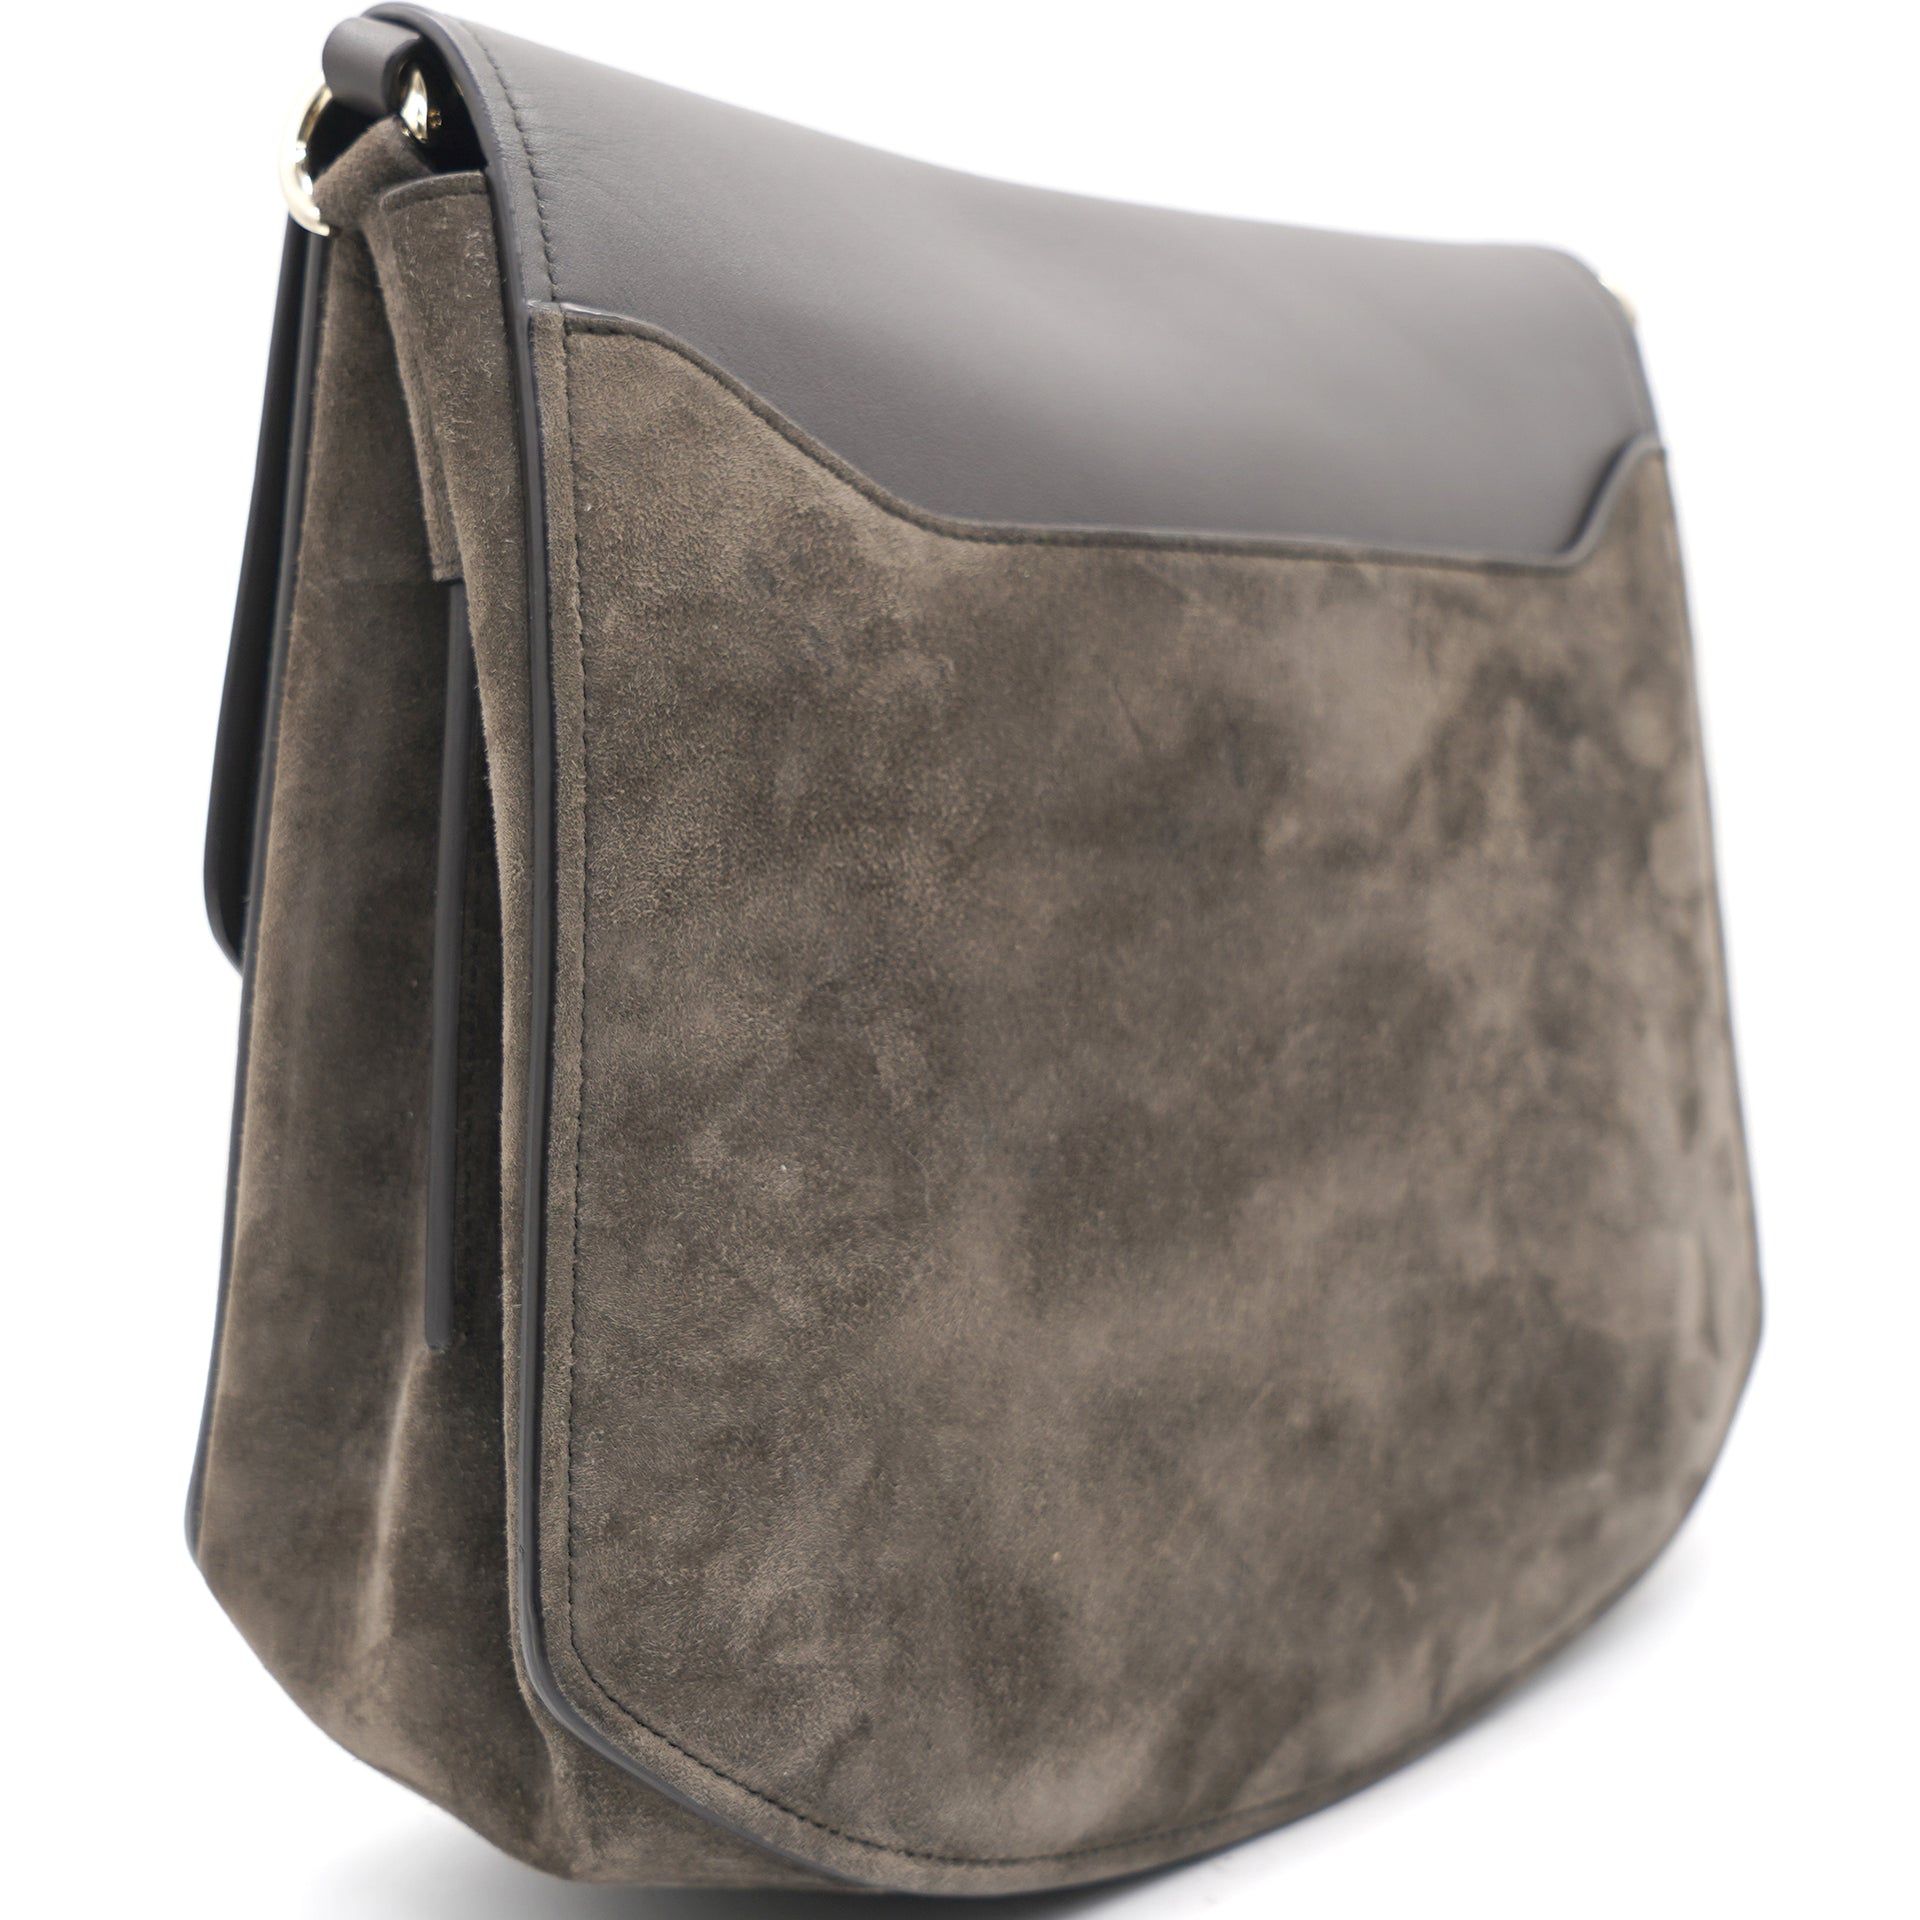 Margot Leather & Suede Shoulder Bag